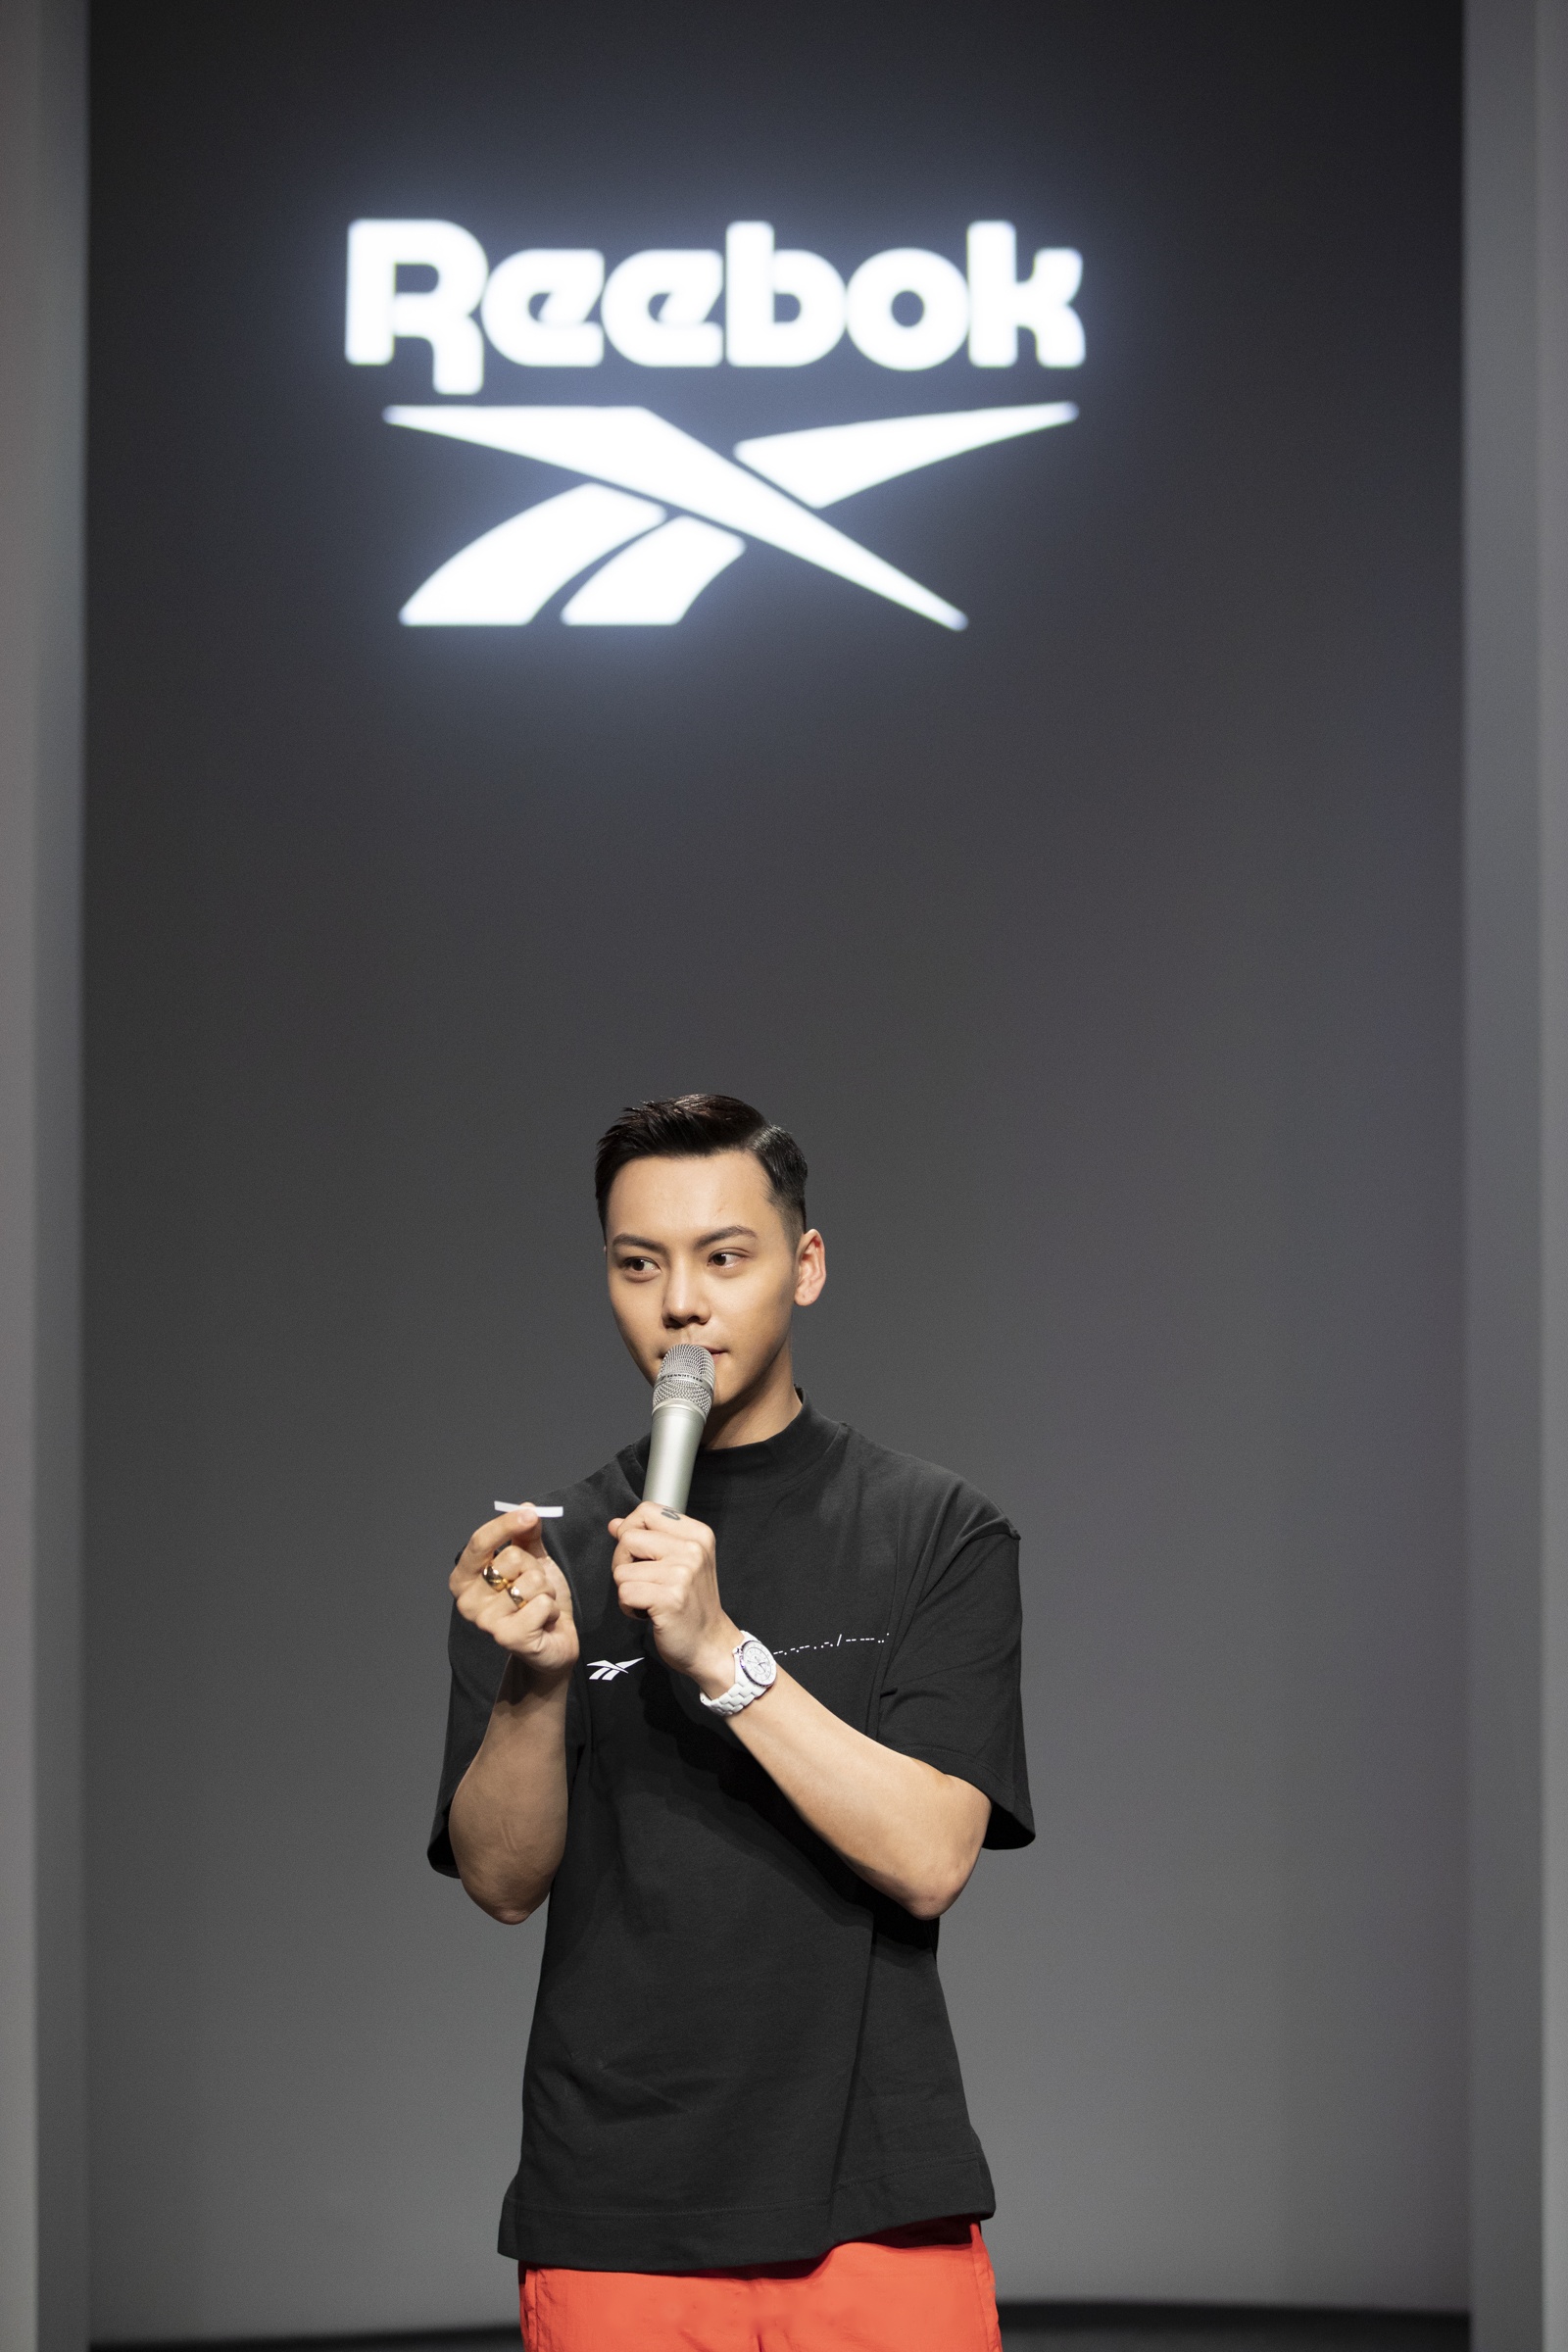 锐步reebok 亚太区品牌代言人陈伟霆受邀出席上海时装周锐步秀,以黑色